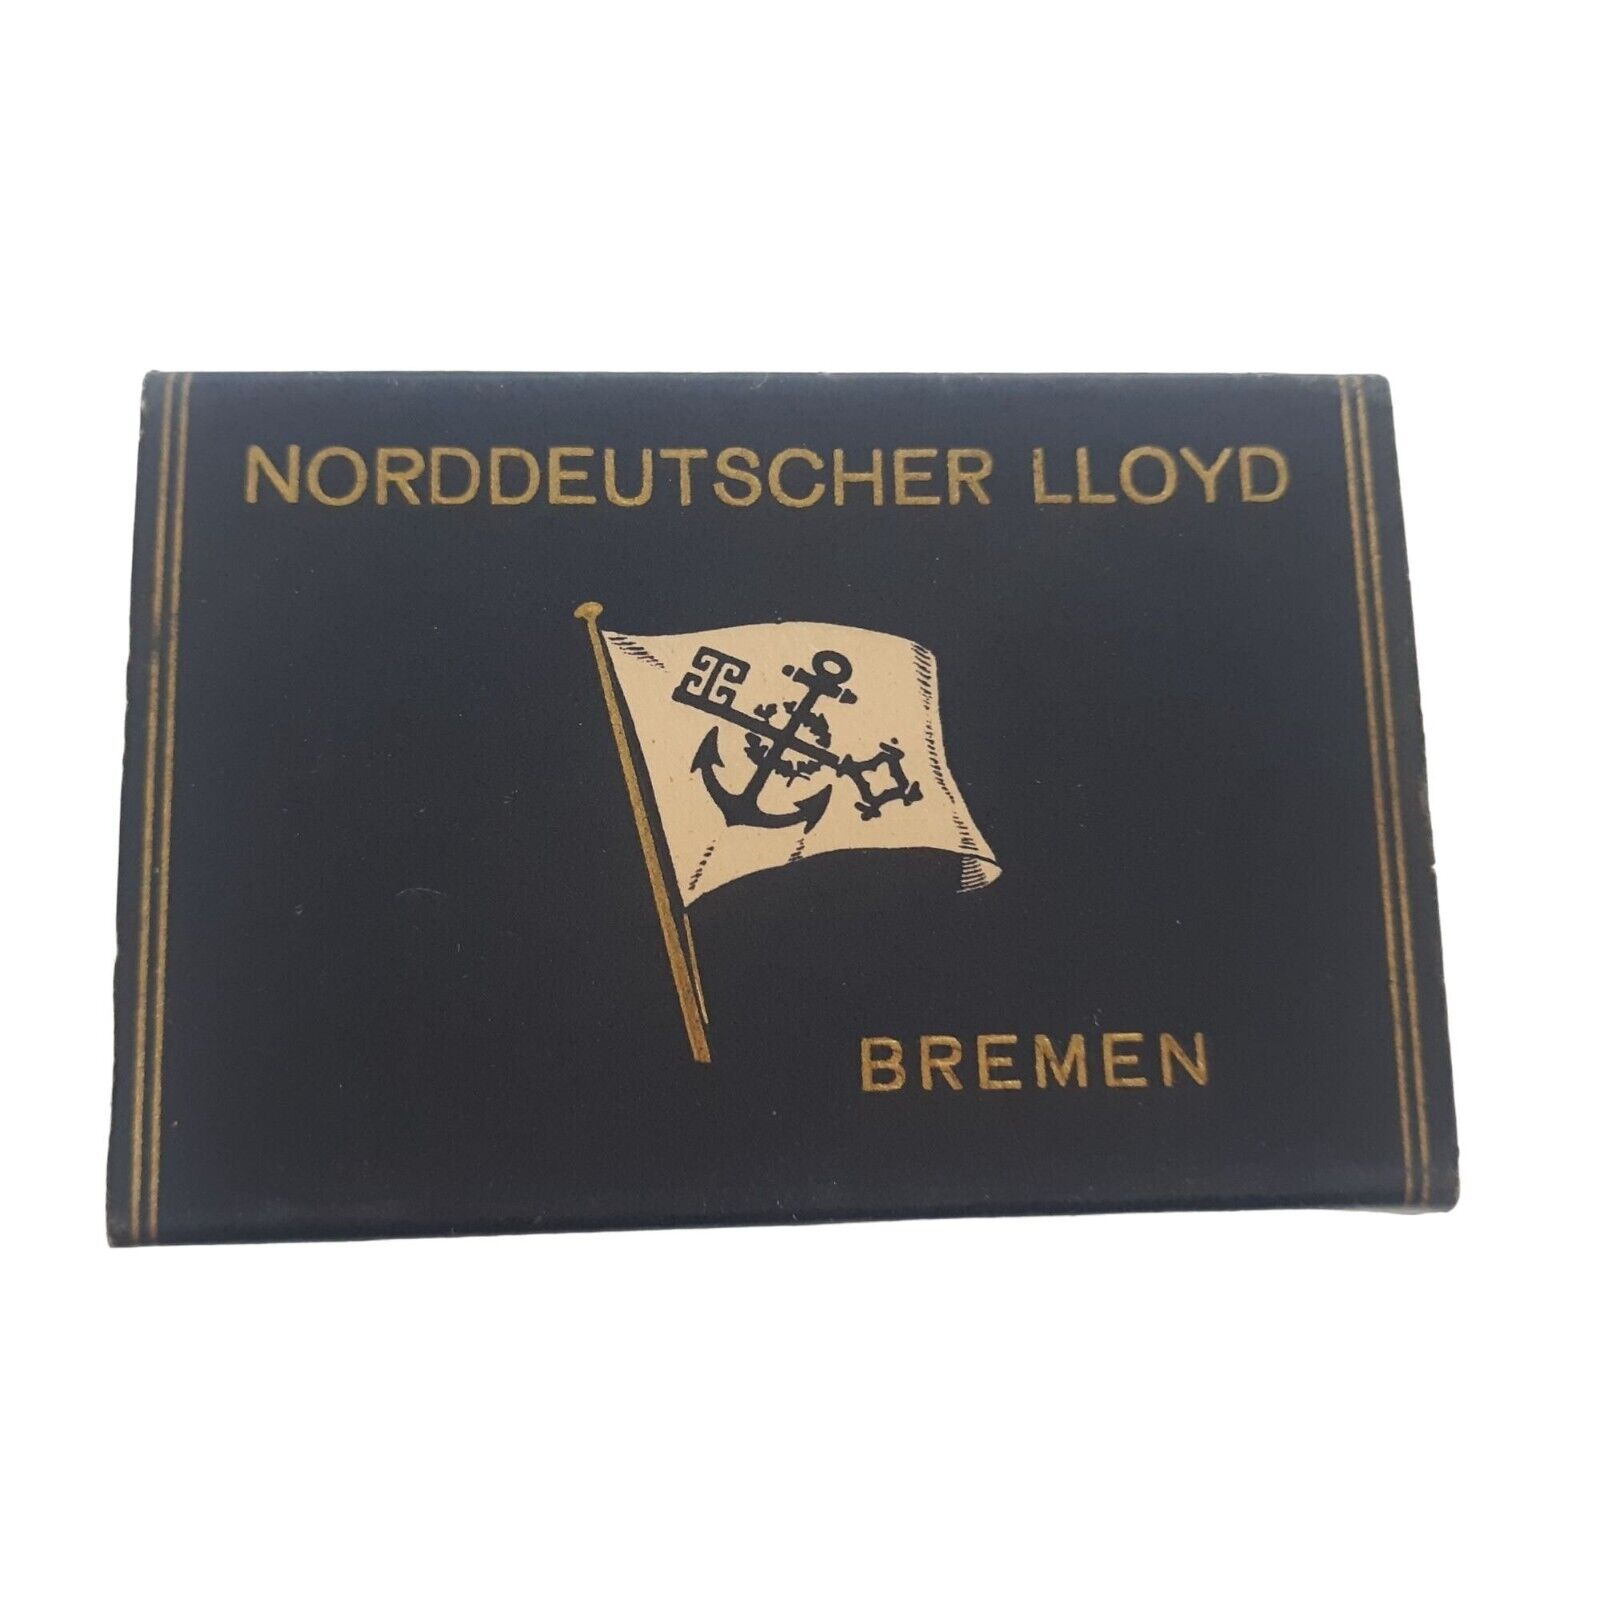 Norddeutscher Lloyd TS Breman Ocean Liner Bar Soap VTG Nautical Maritime Cruise 